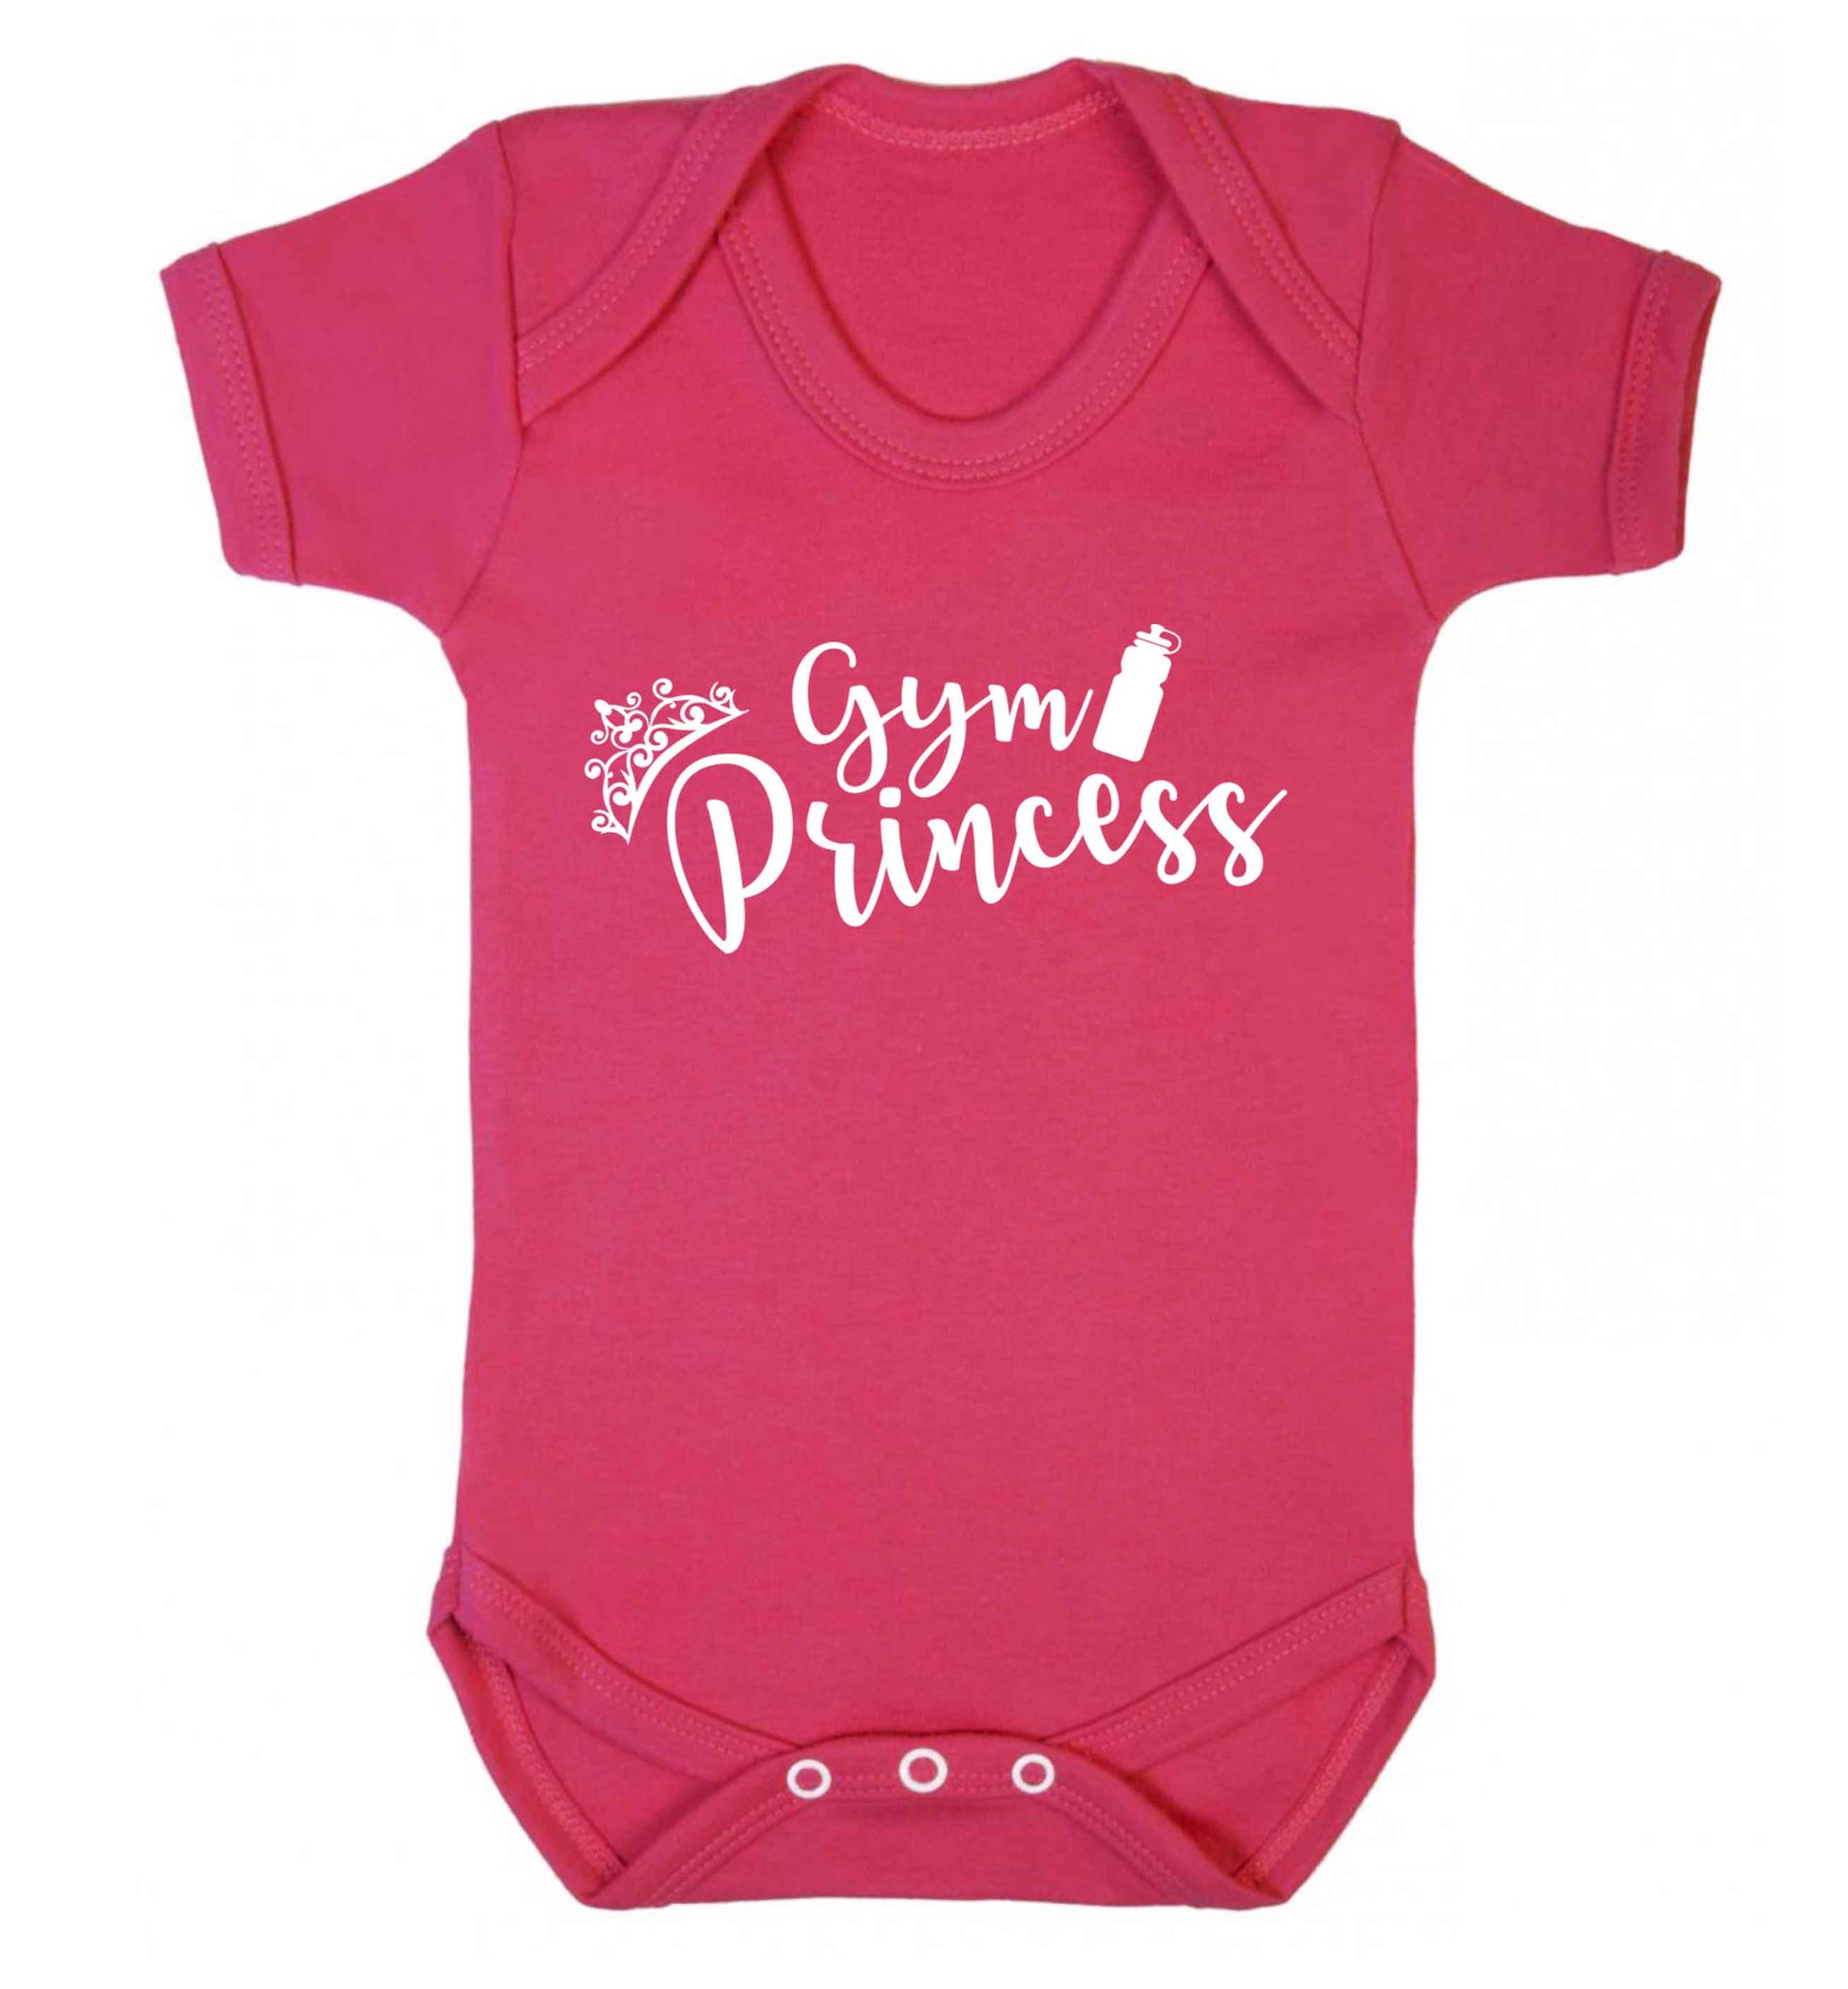 Gym princess Baby Vest dark pink 18-24 months